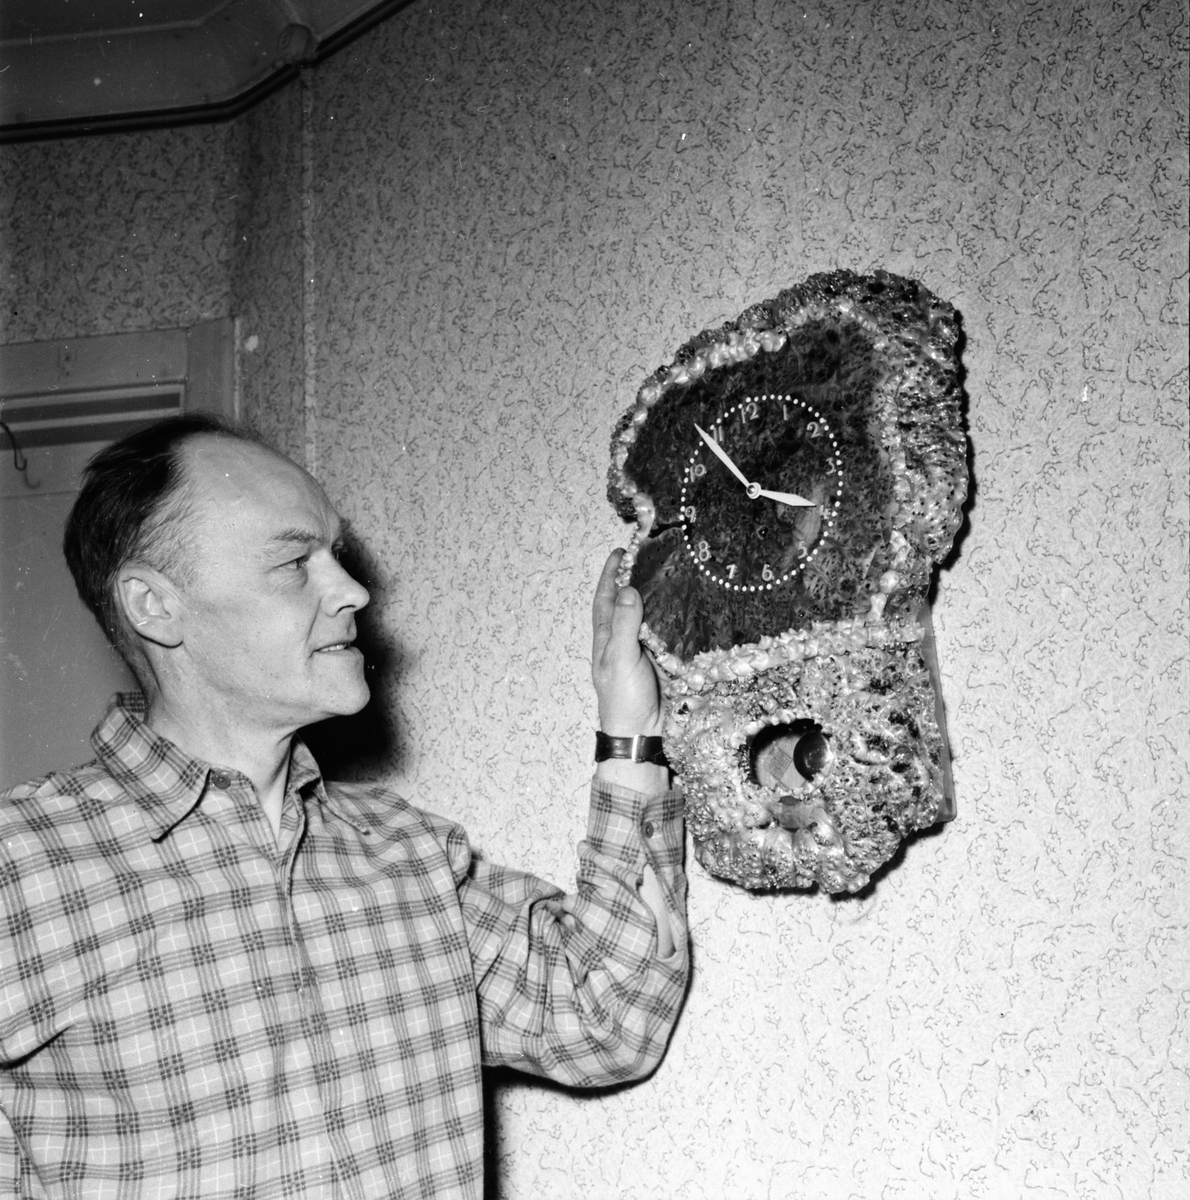 Jean Rönnlund Parapyskolog
1/2 1958